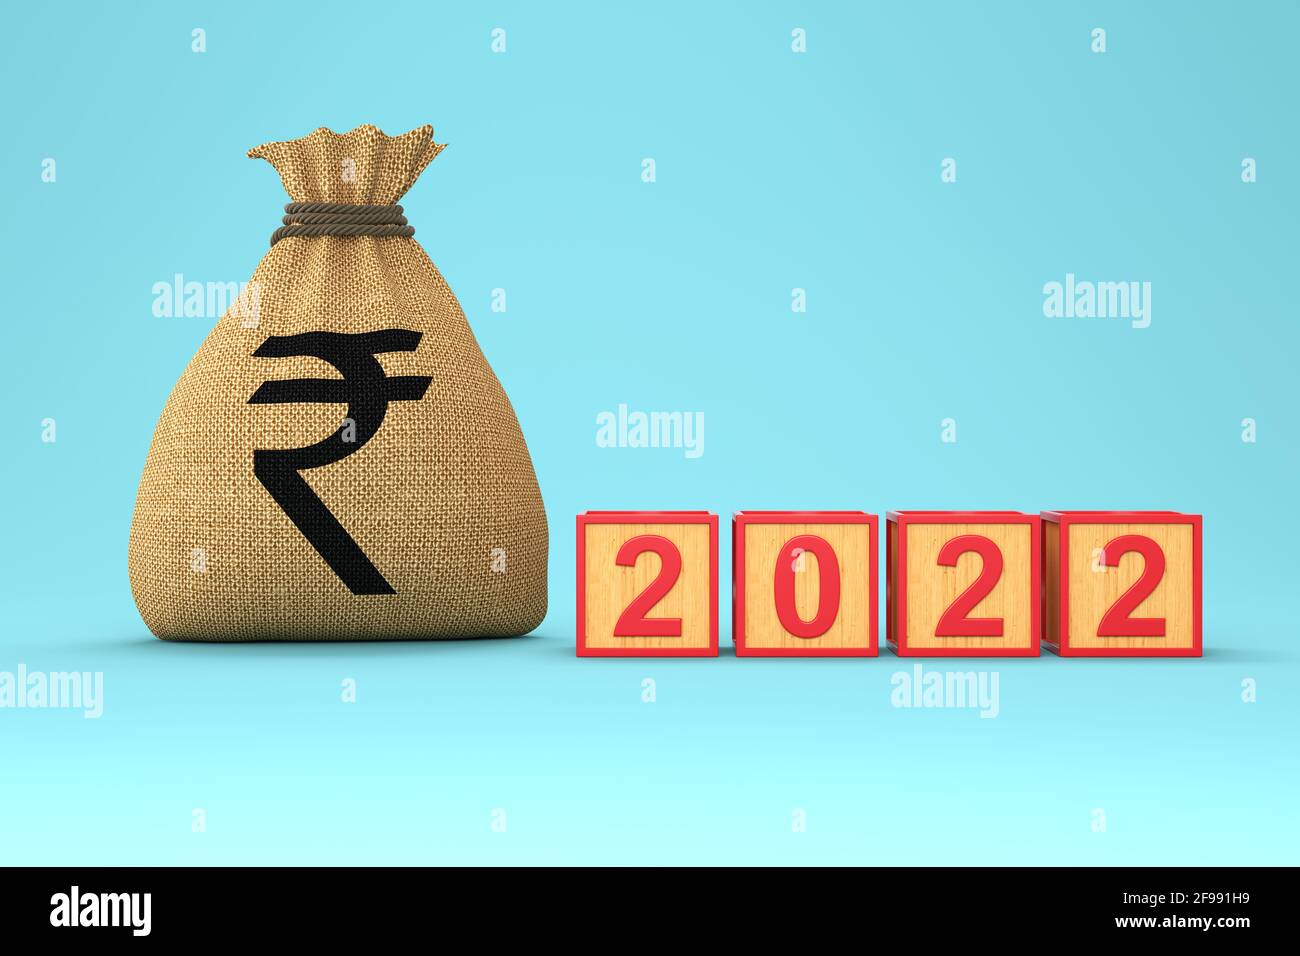 Neues Jahr 2022 Kreatives Design-Konzept mit indischen Rupie-Symbol - 3D gerendertes Bild Stockfoto